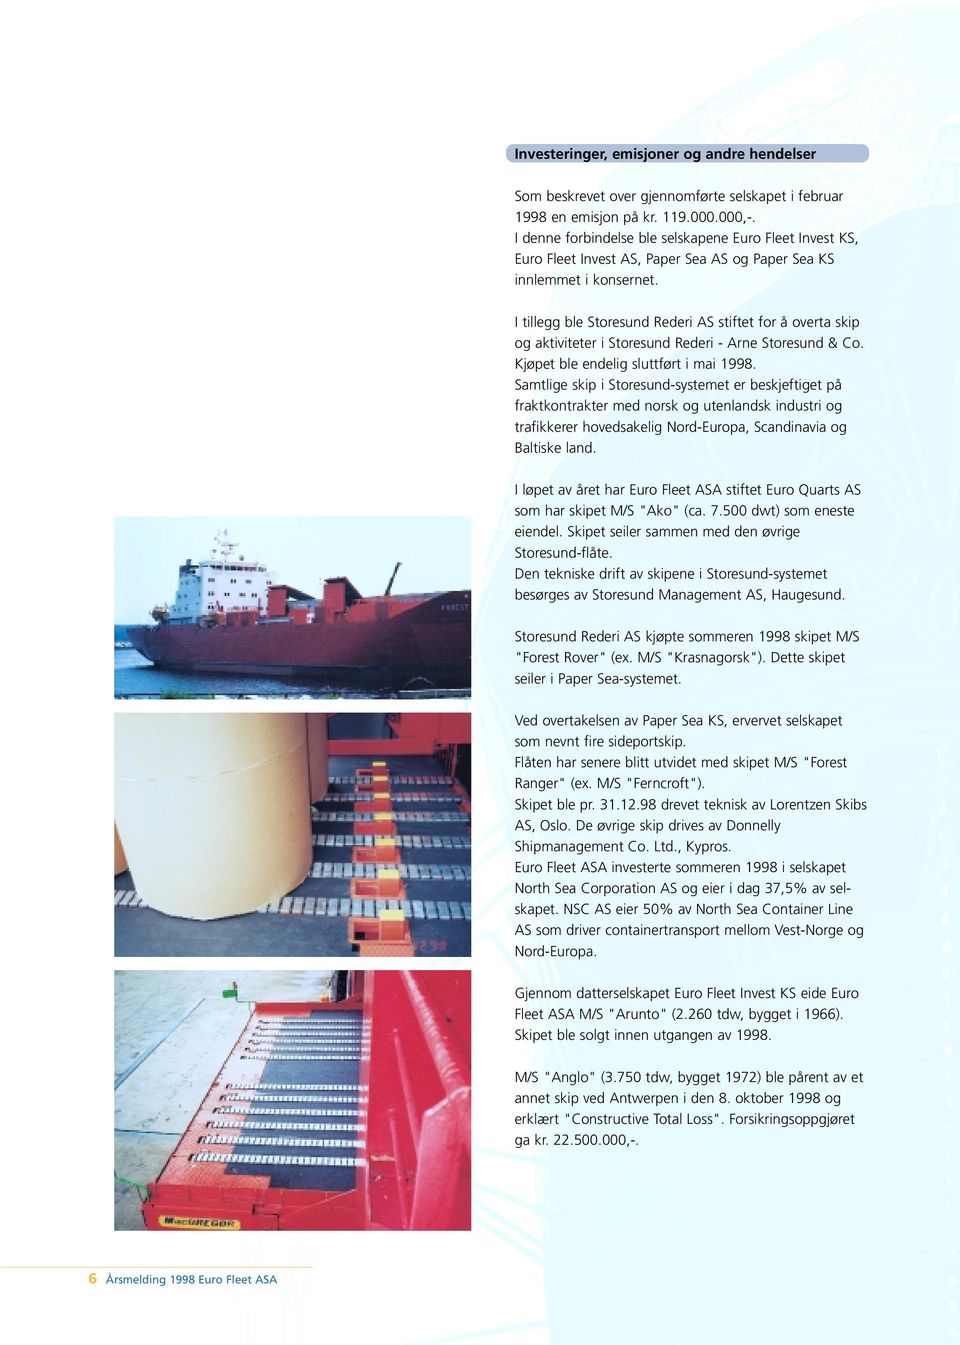 I tillegg ble Storesund ederi AS stiftet for å overta skip og aktiviteter i Storesund ederi - Arne Storesund & Co. Kjøpet ble endelig sluttført i mai 1998.